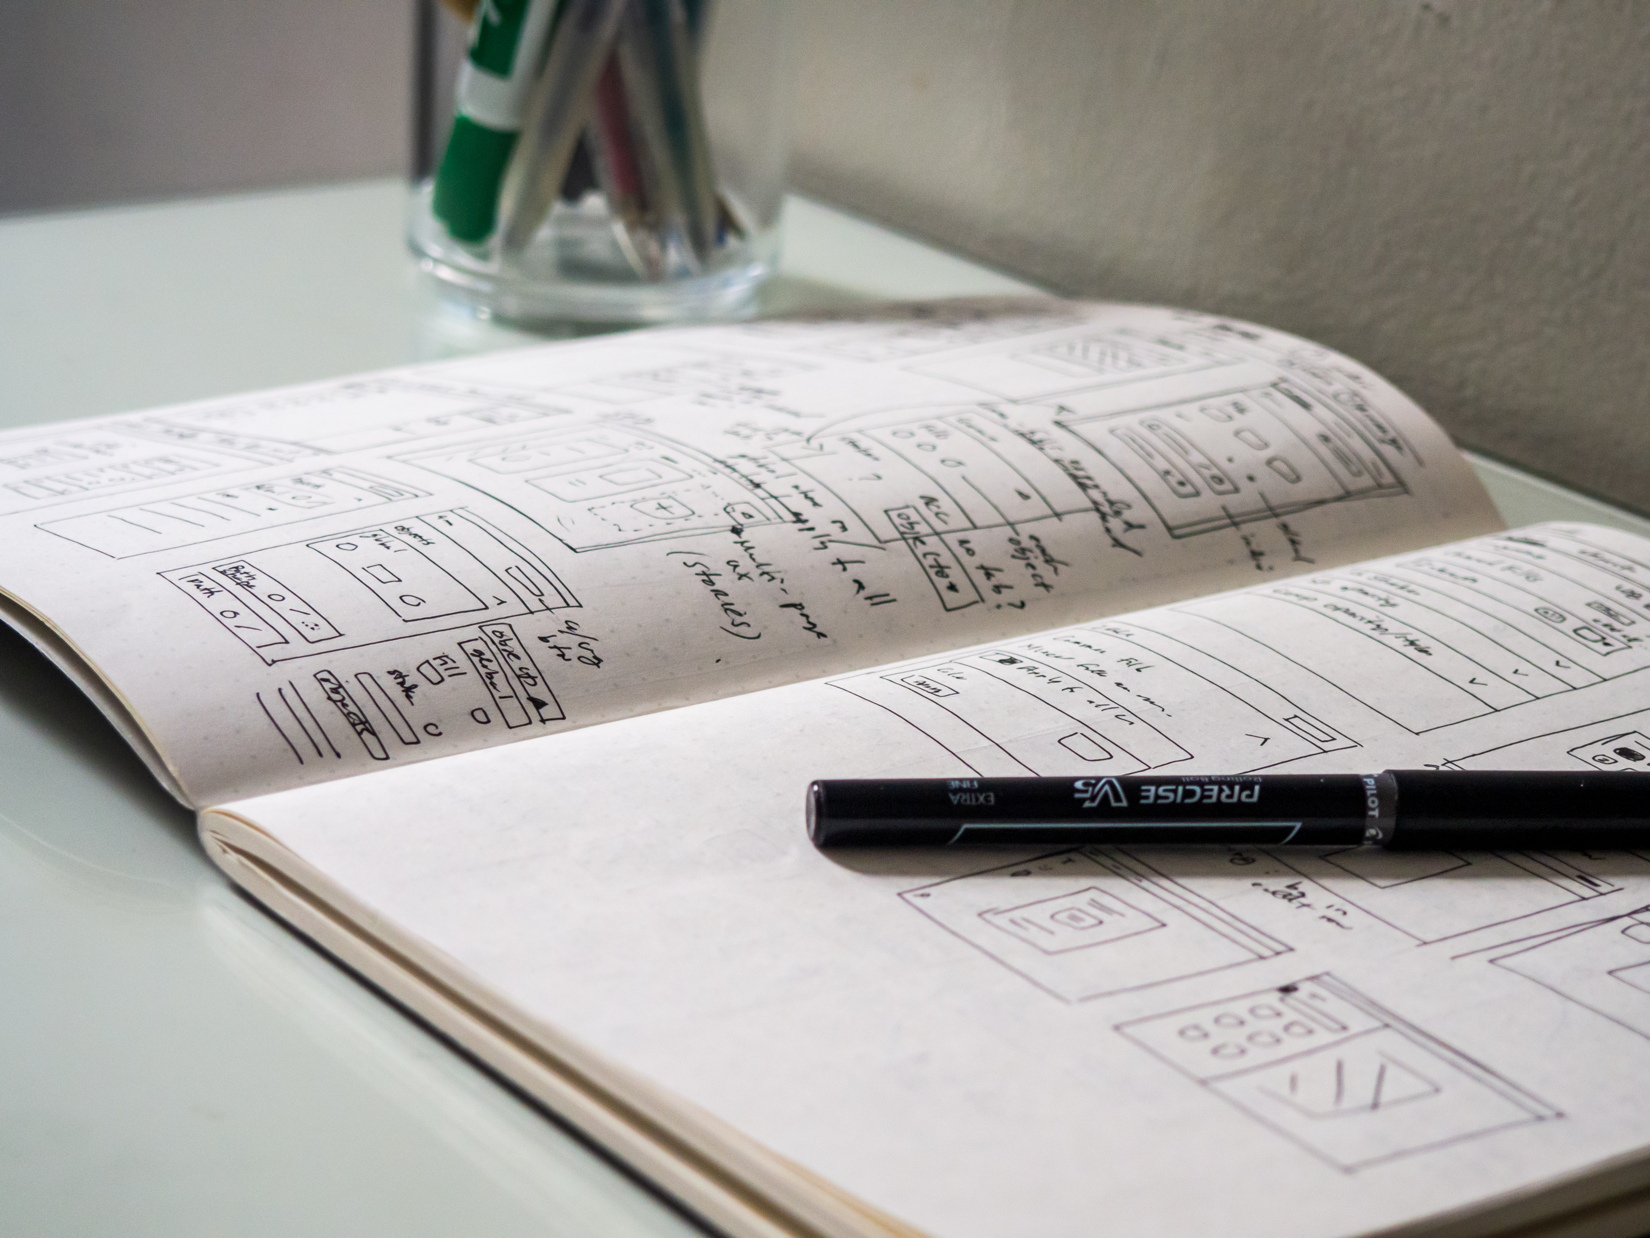 Sketchbook and Pen on Desk